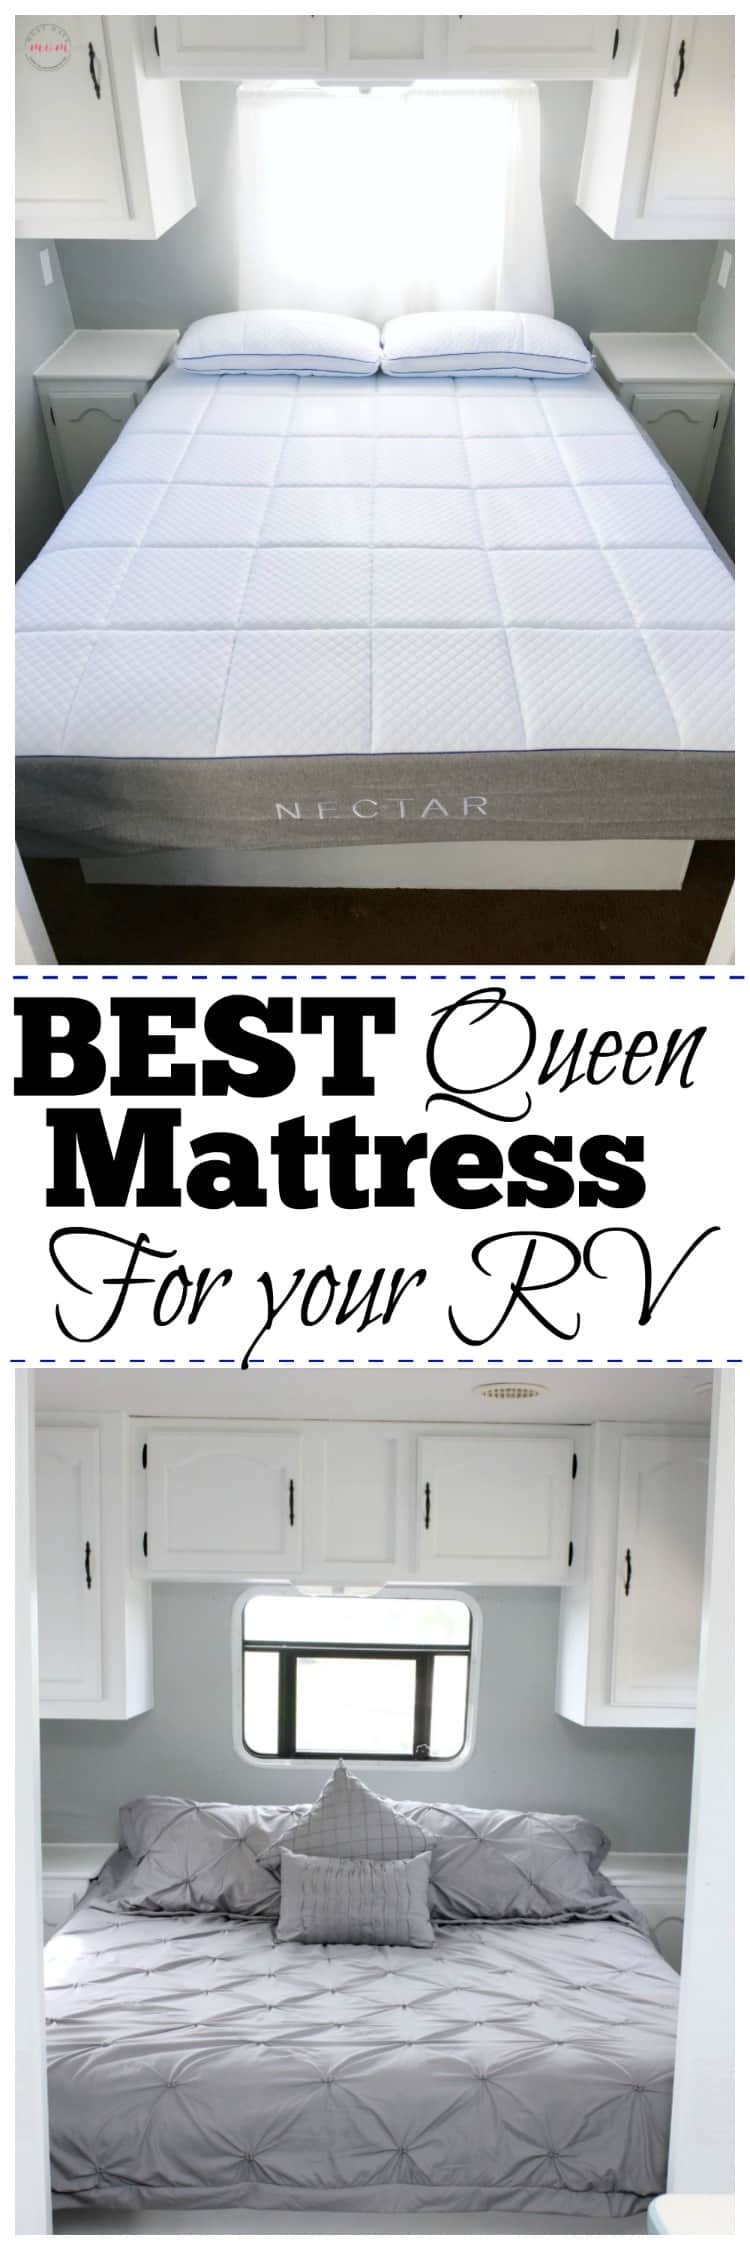 Best RV Mattress and why we ordered online! Get the best mattress 2017